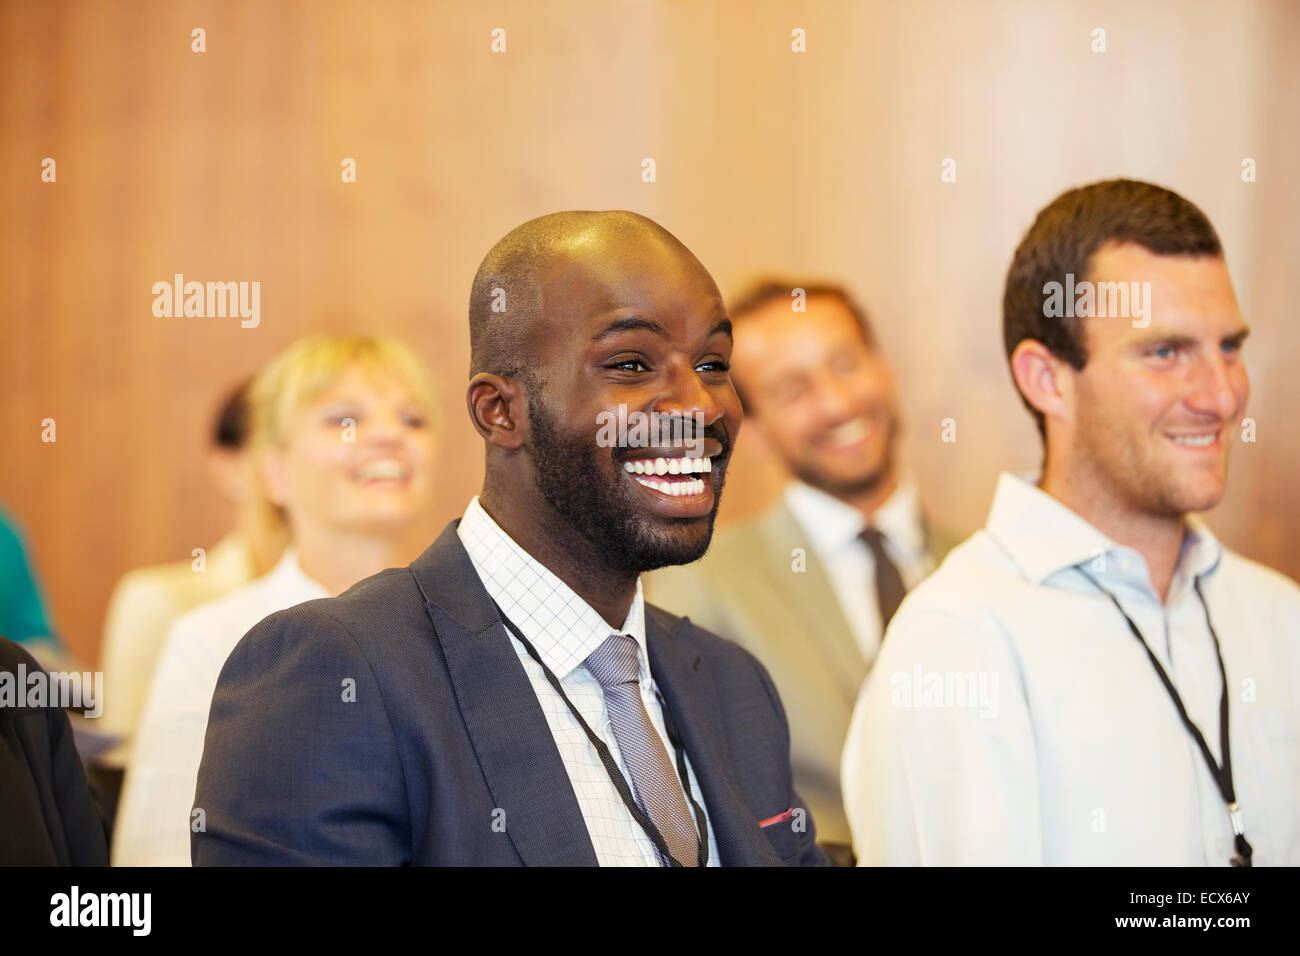 Ritratto di due giovani uomini, uno ridere, seduti nella sala conferenze Foto Stock